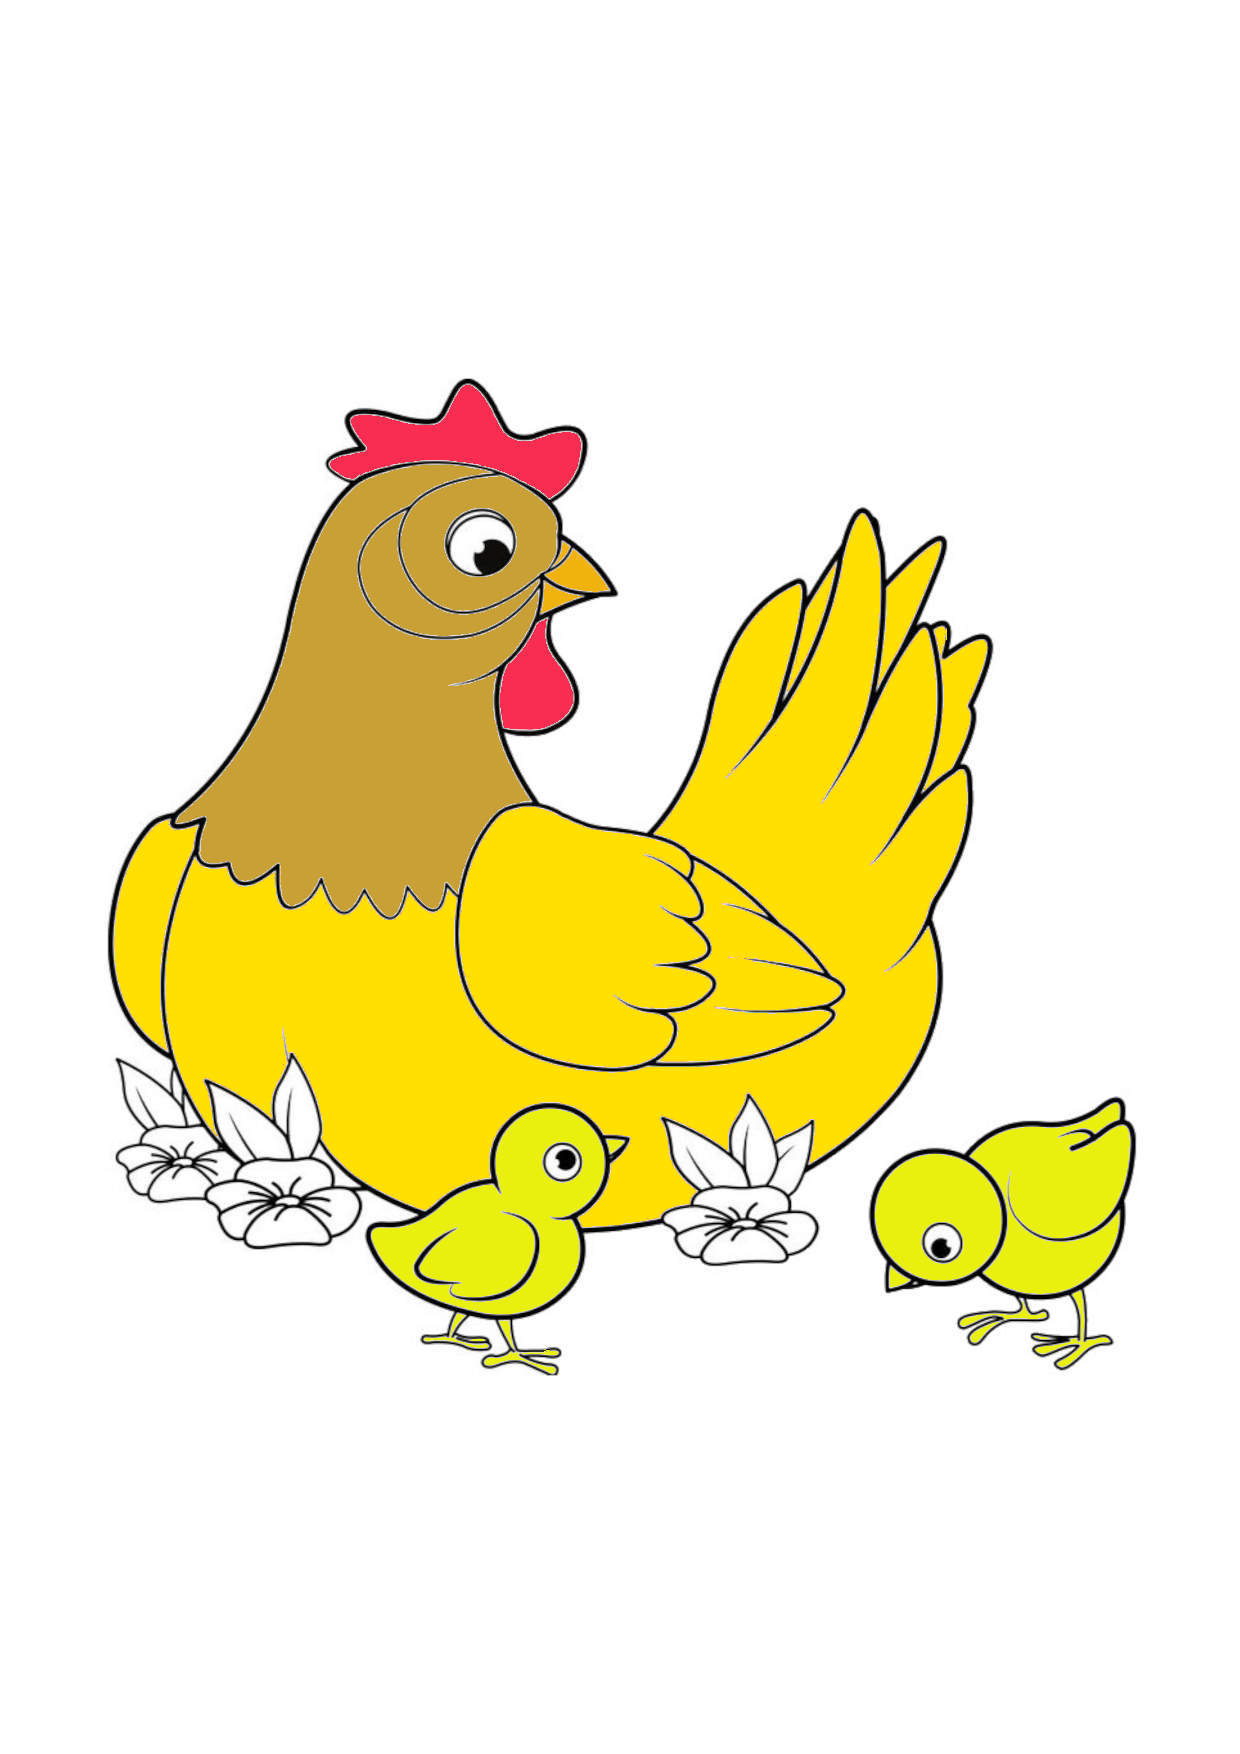 Tải miễn phí bài tập tô màu - Tô màu Con gà - STEAM KIDS